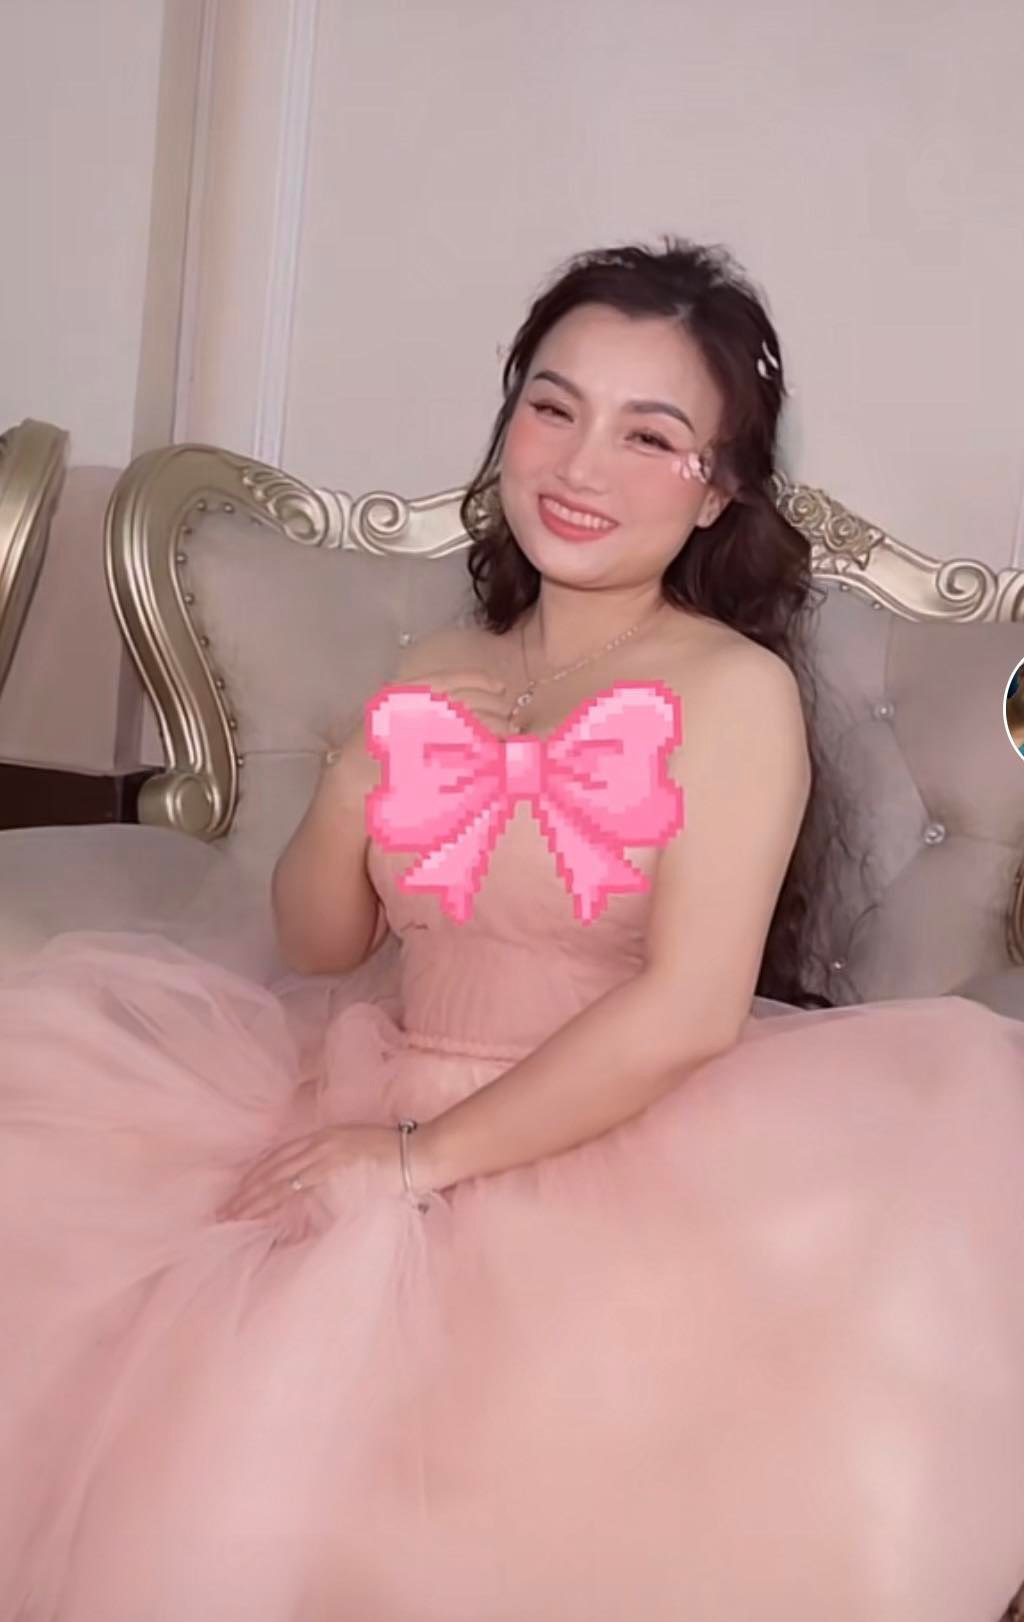 Quỳnh Trần JP diện váy hồng điệu đà, được khen hết lời sau khi chi tiền khủng để 'dao kéo' - ảnh 3